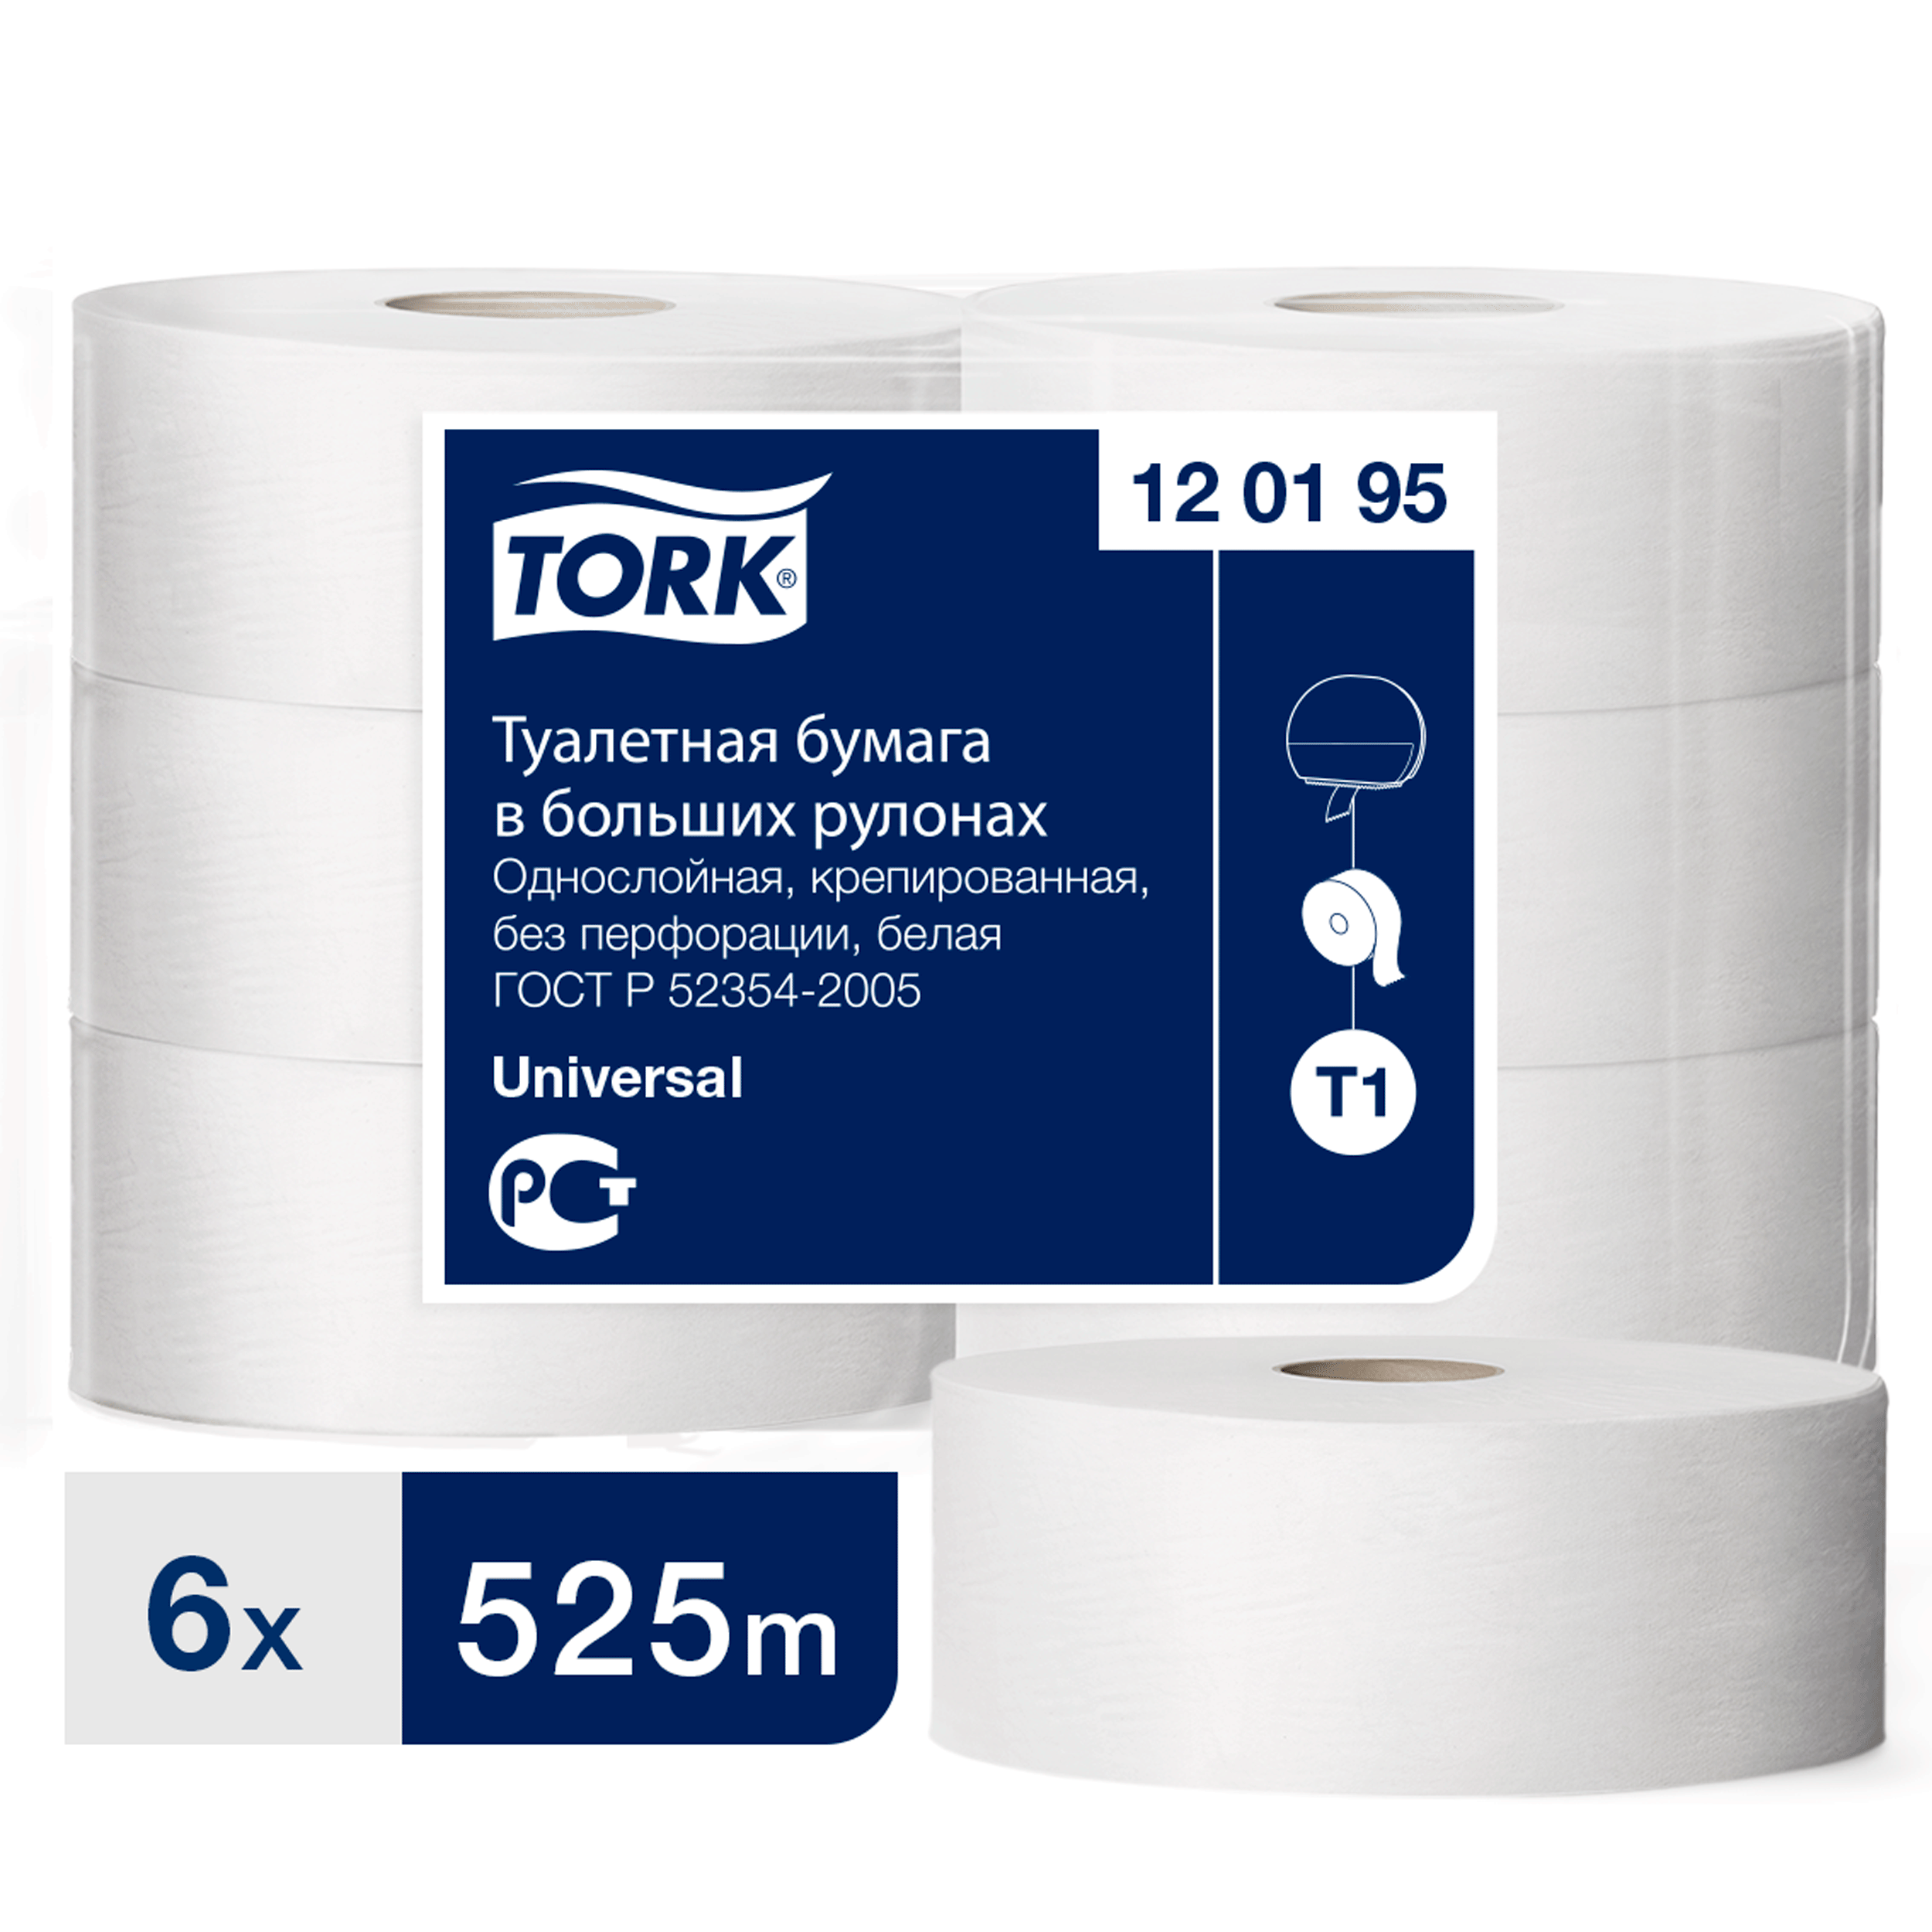 Туалетная бумага Tork в больших рулонах, T1, 1 слой, 525 м, ширина 9,5см, 6 шт бумага туалетная для диспенсера листовая 1 сл tork т3 universal 49 уп по 250 л 114272